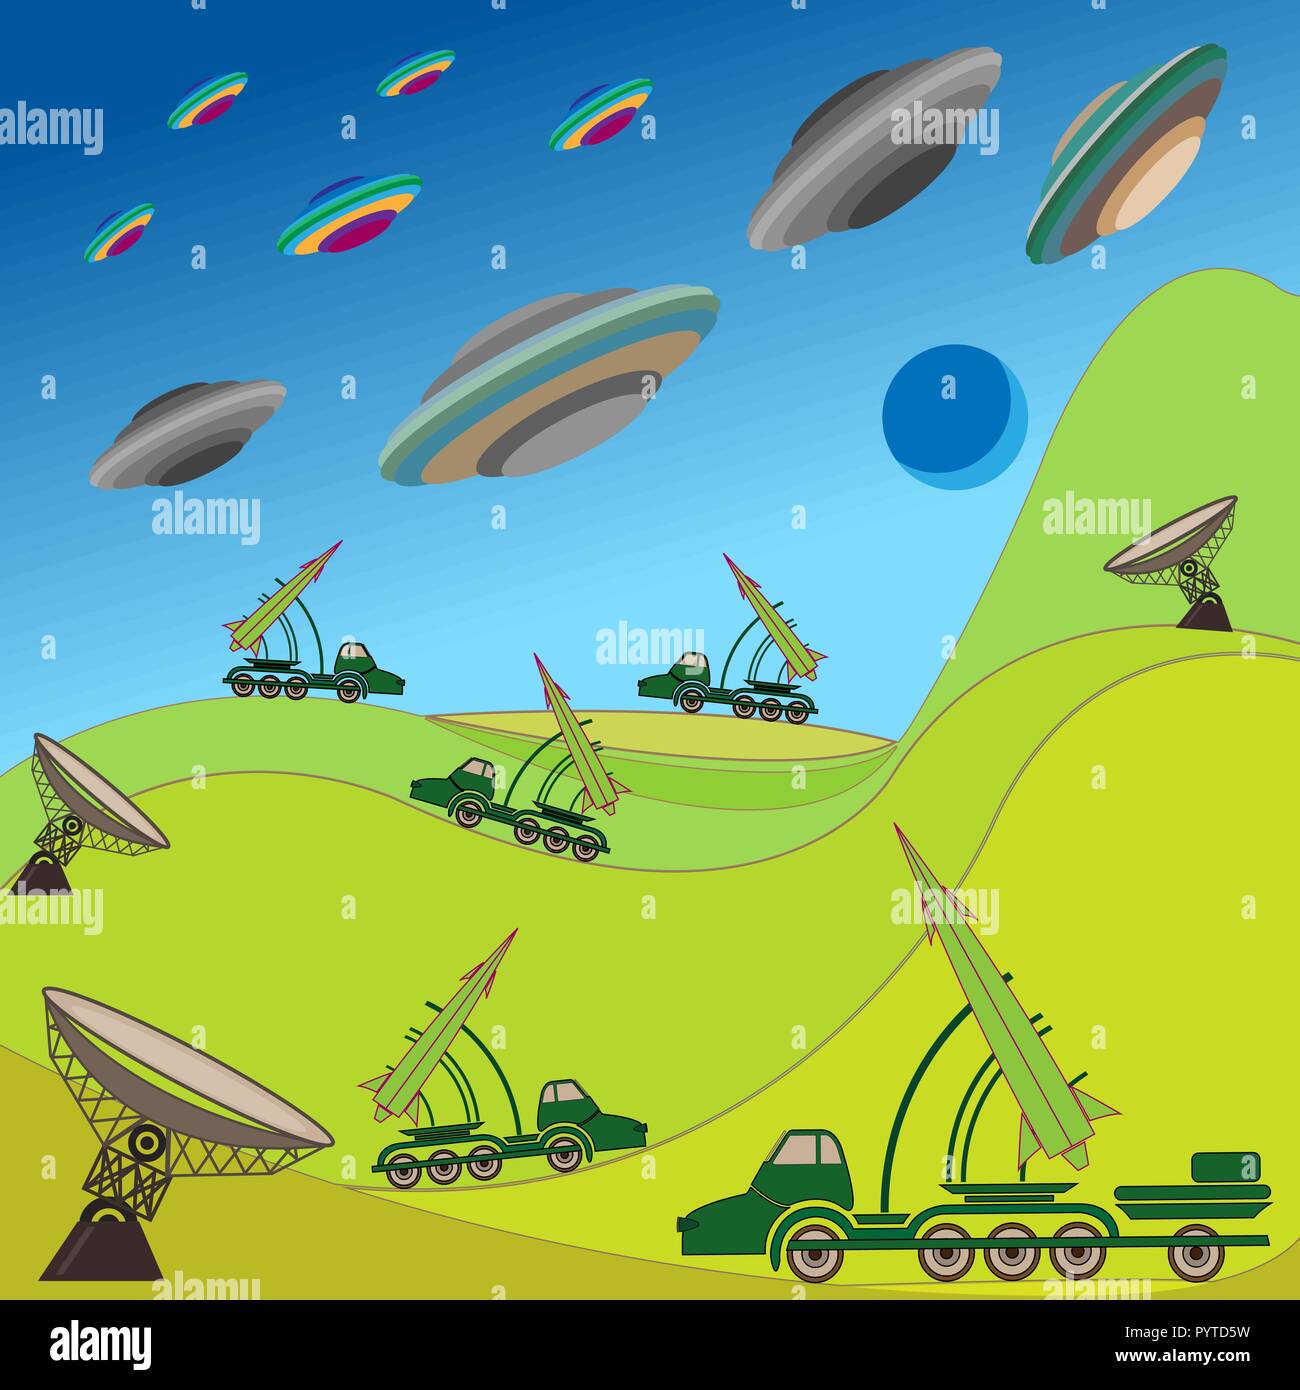 Fliegende Teller von Aliens greifen die Erde. Militärische Rakete hält die Verteidigung. Handzeichnung Vector Illustration Stock Vektor